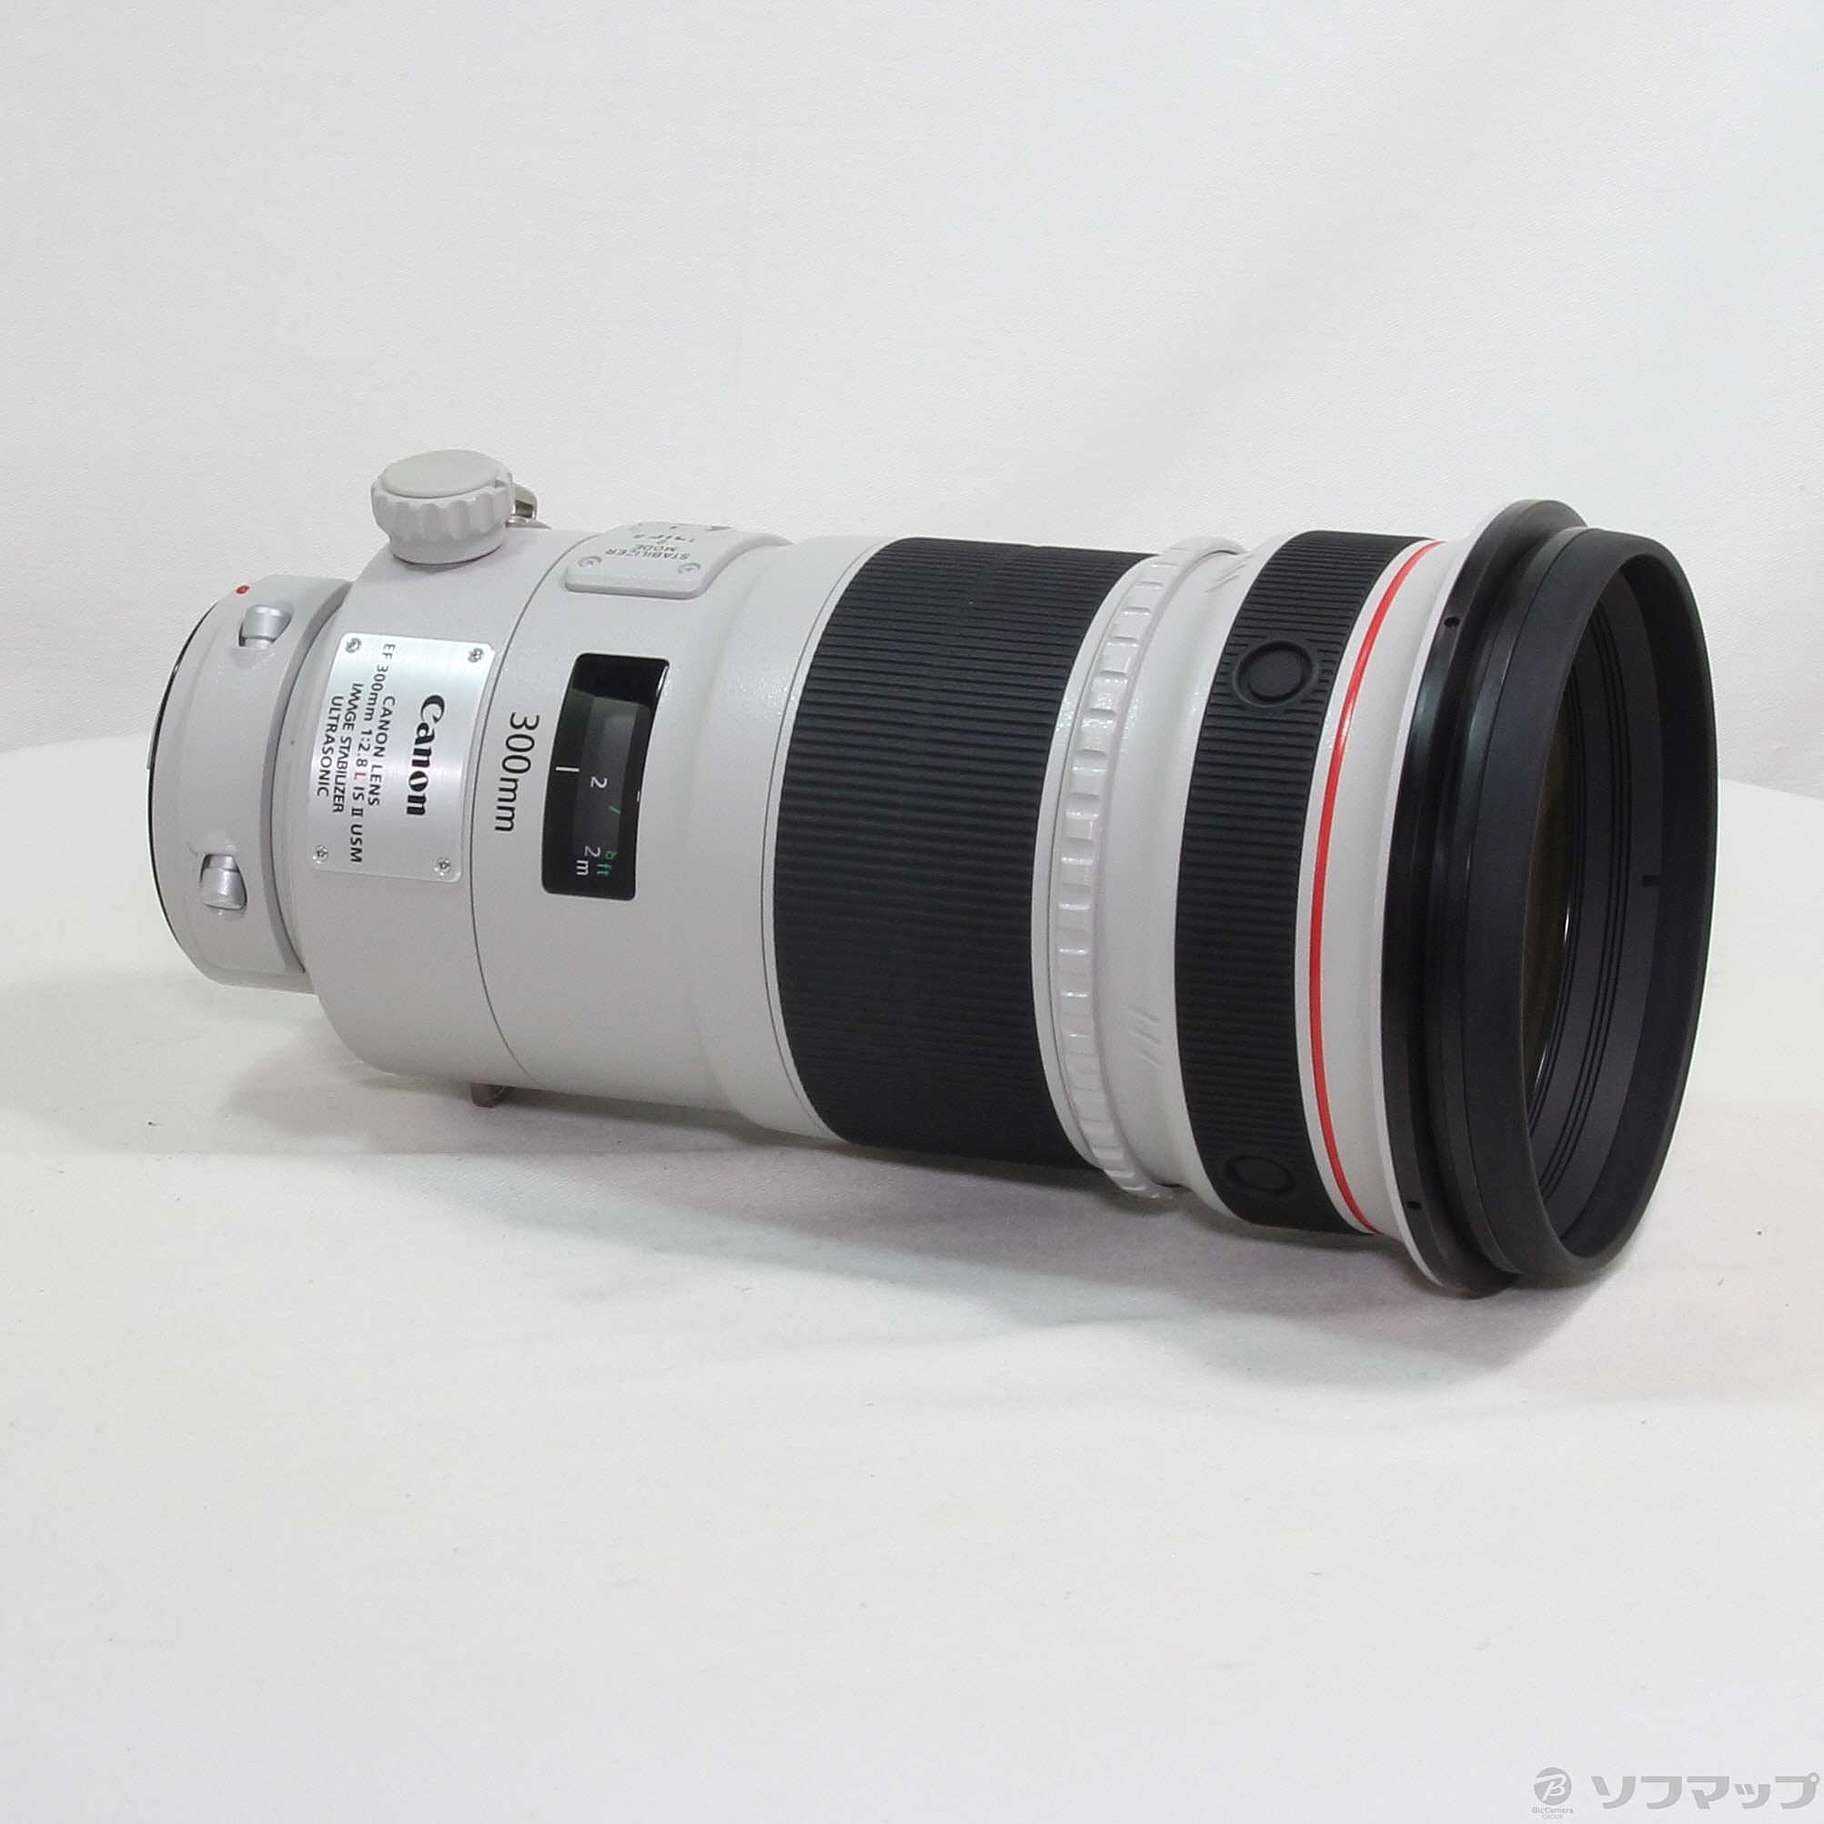 ☆銘玉☆ Canon キヤノン EF300mm F2.8L USM 単焦点望遠レンズ 